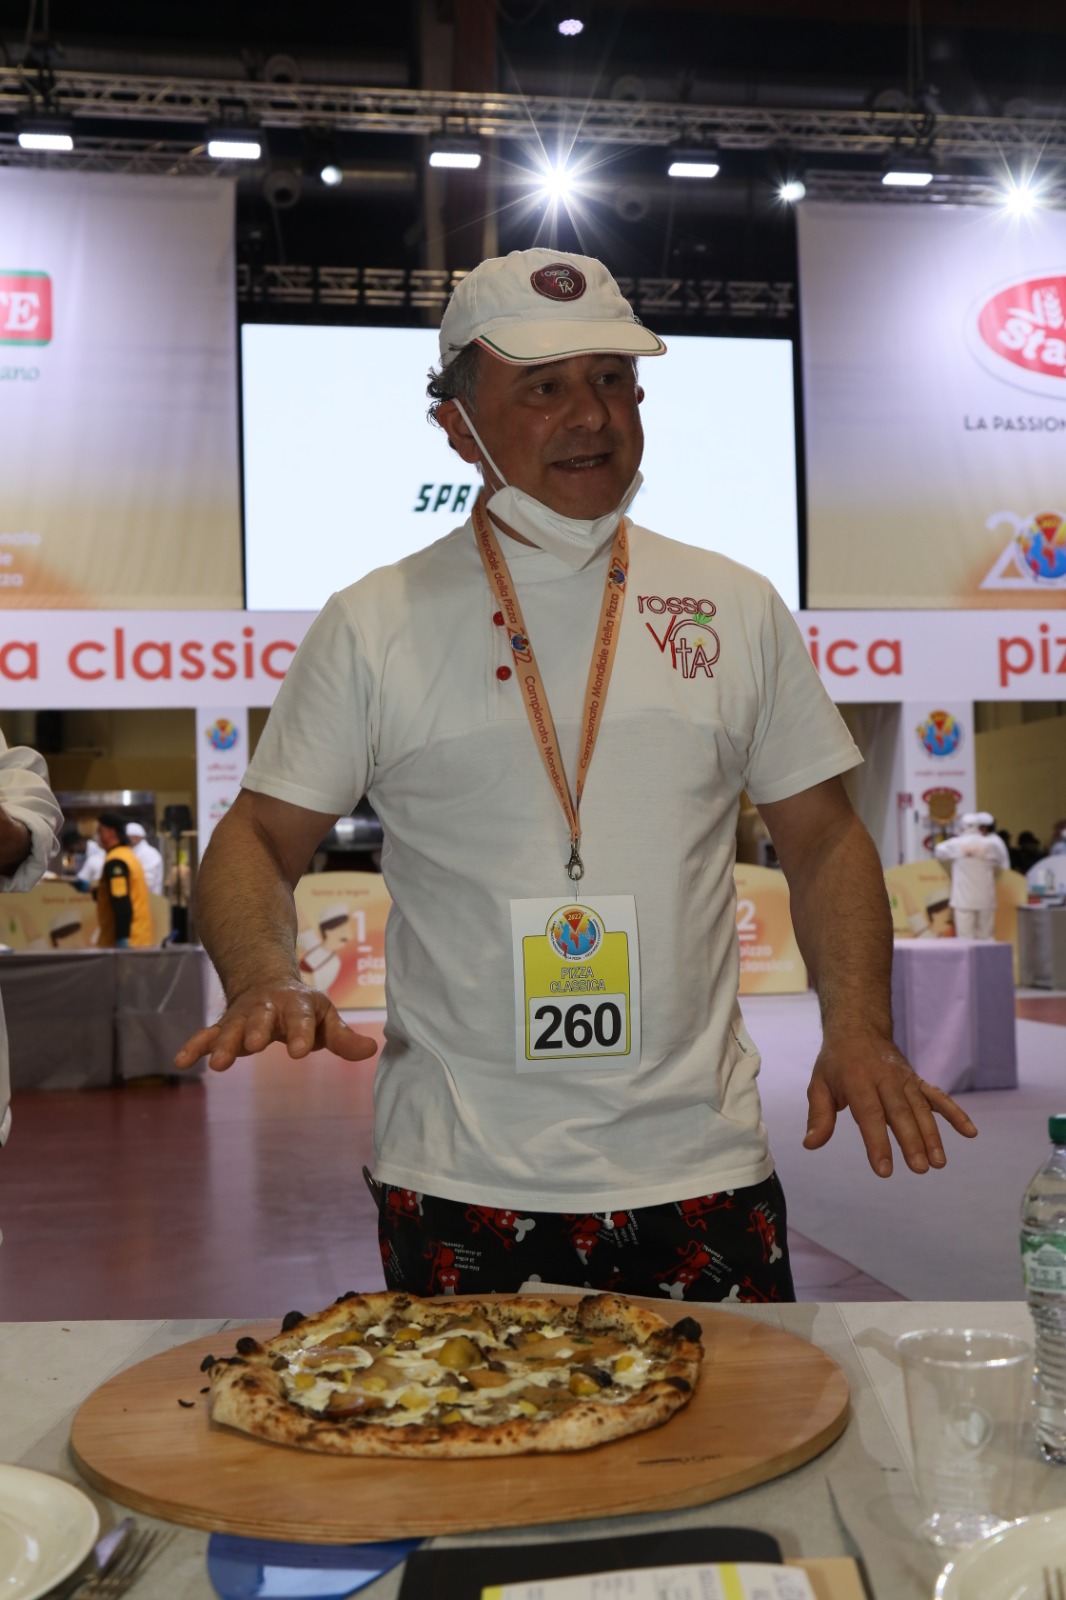 Campionato mondiale di pizza,  Michelangelo Gentile di Telese Terme si aggiudica il quarto posto